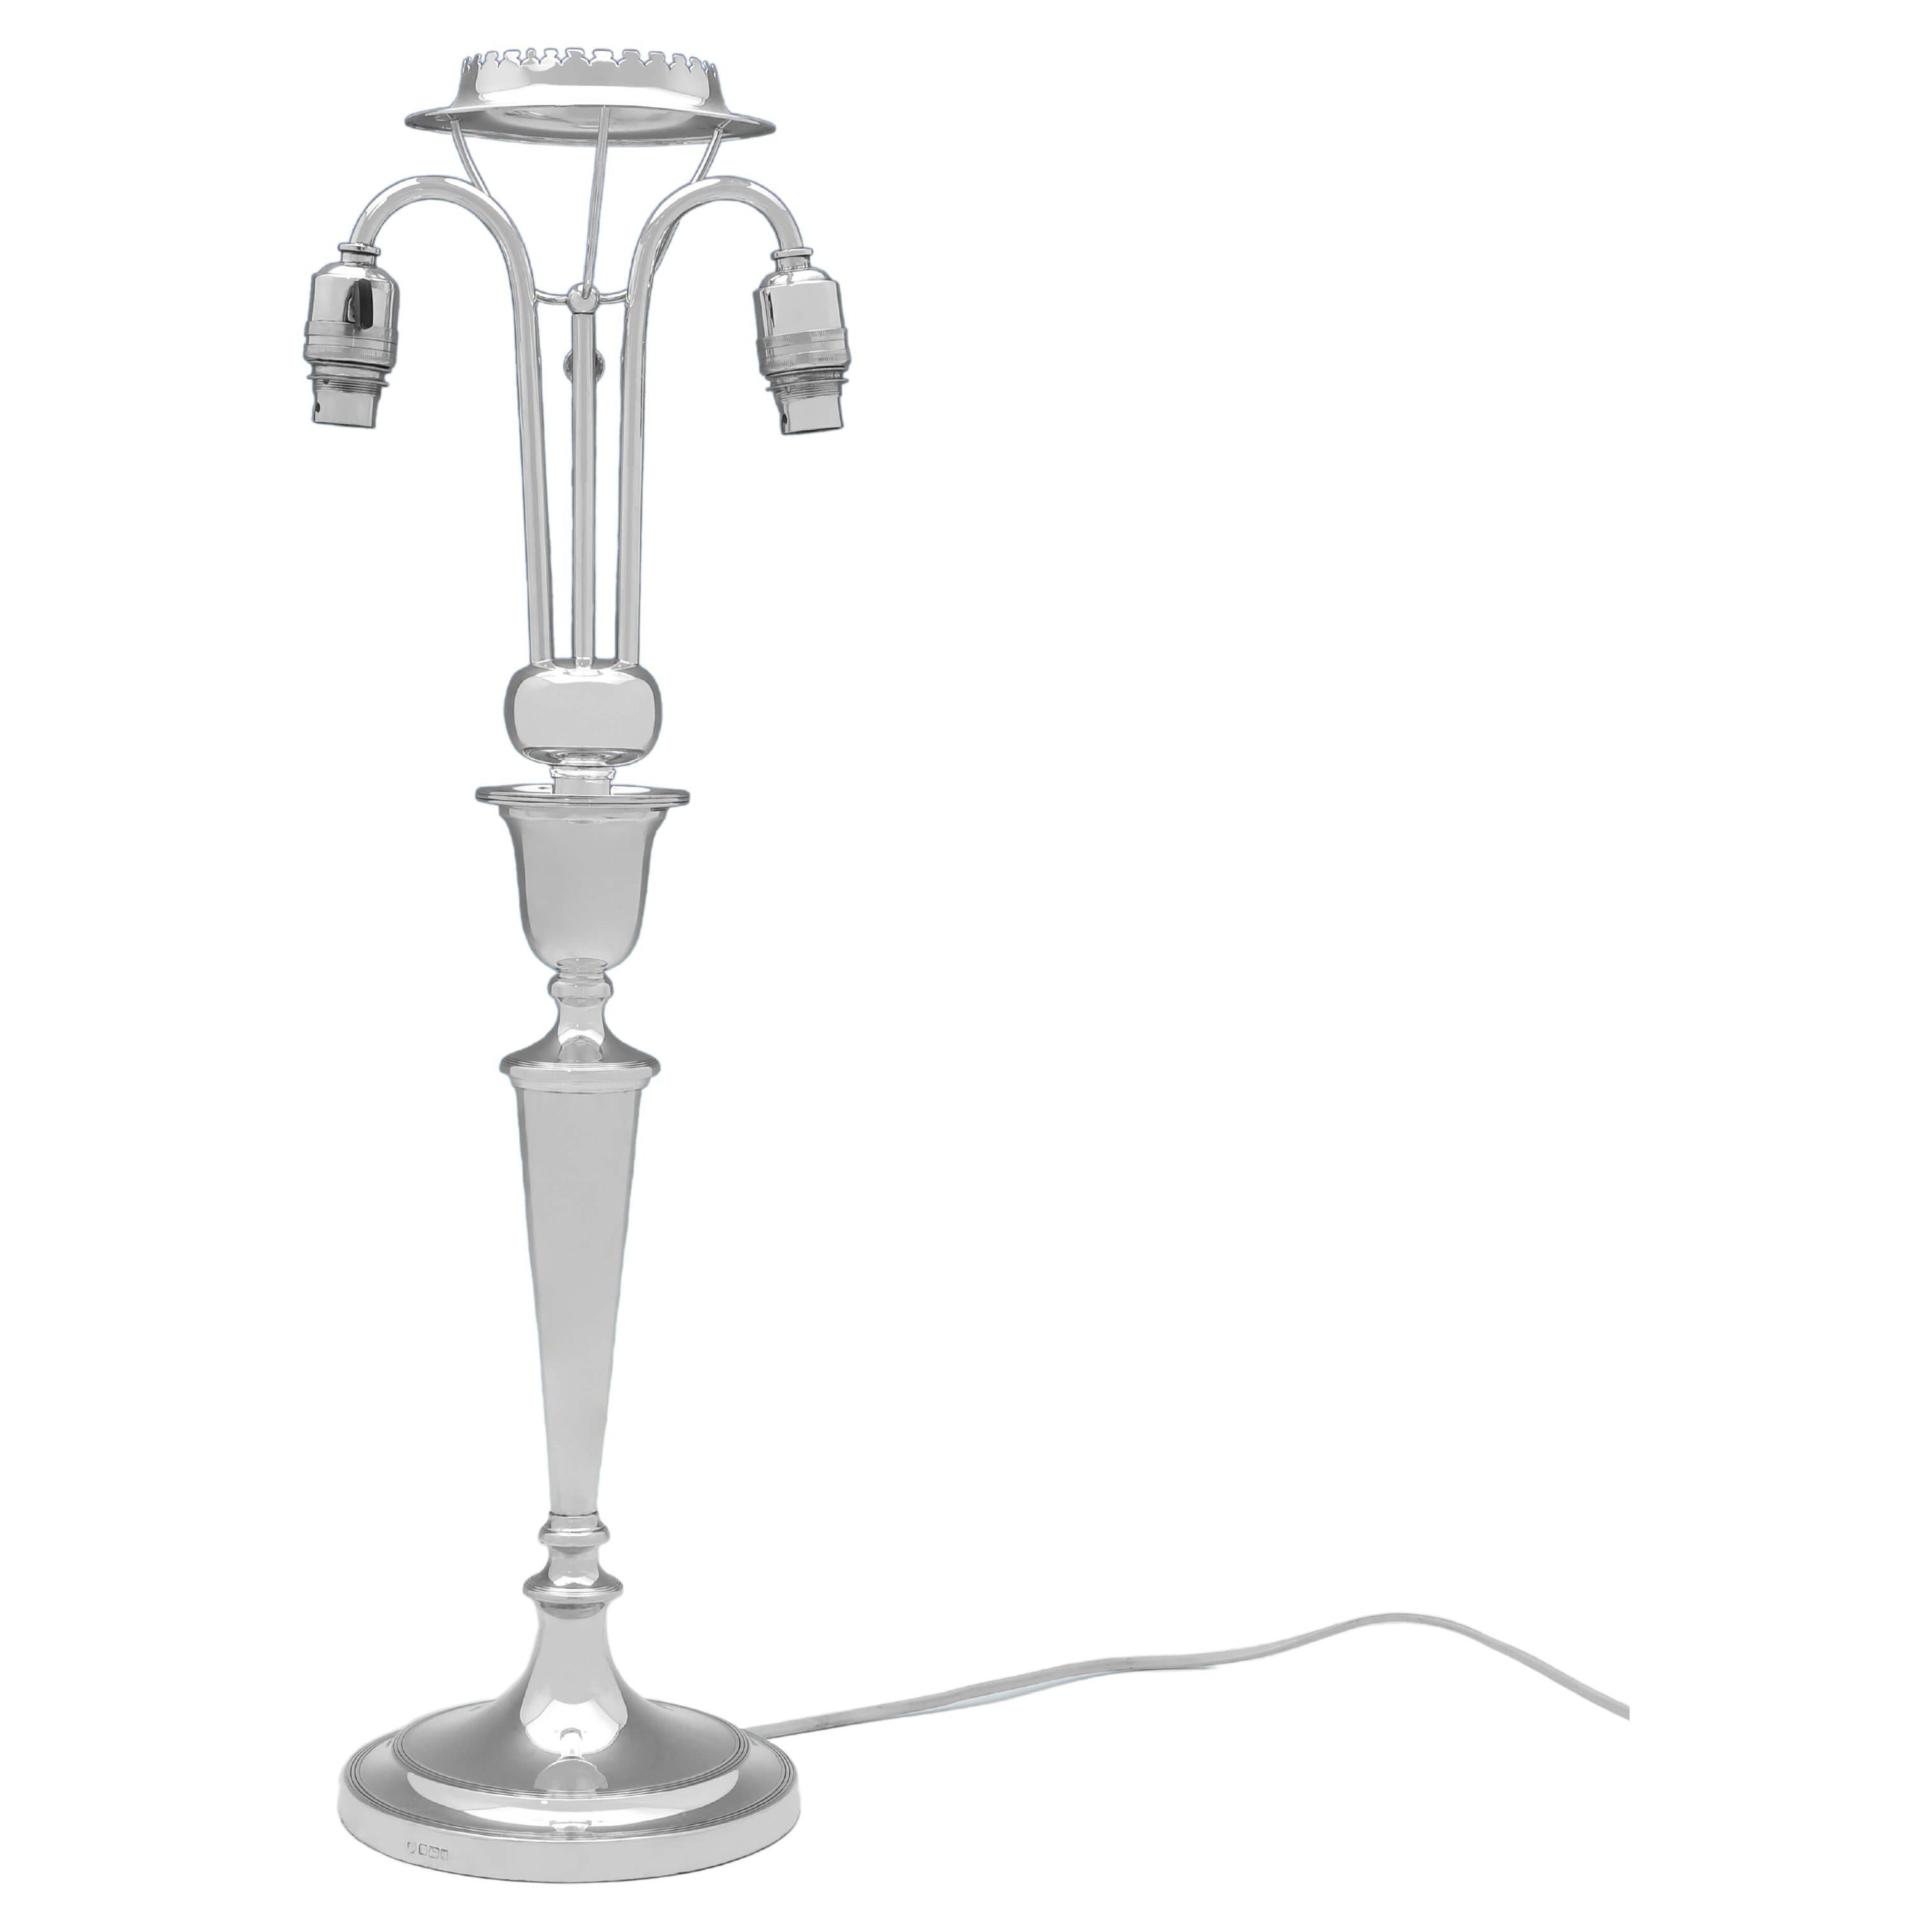 Très rare lampe de bureau victorienne électrique en argent sterling, fabriquée en 1899 